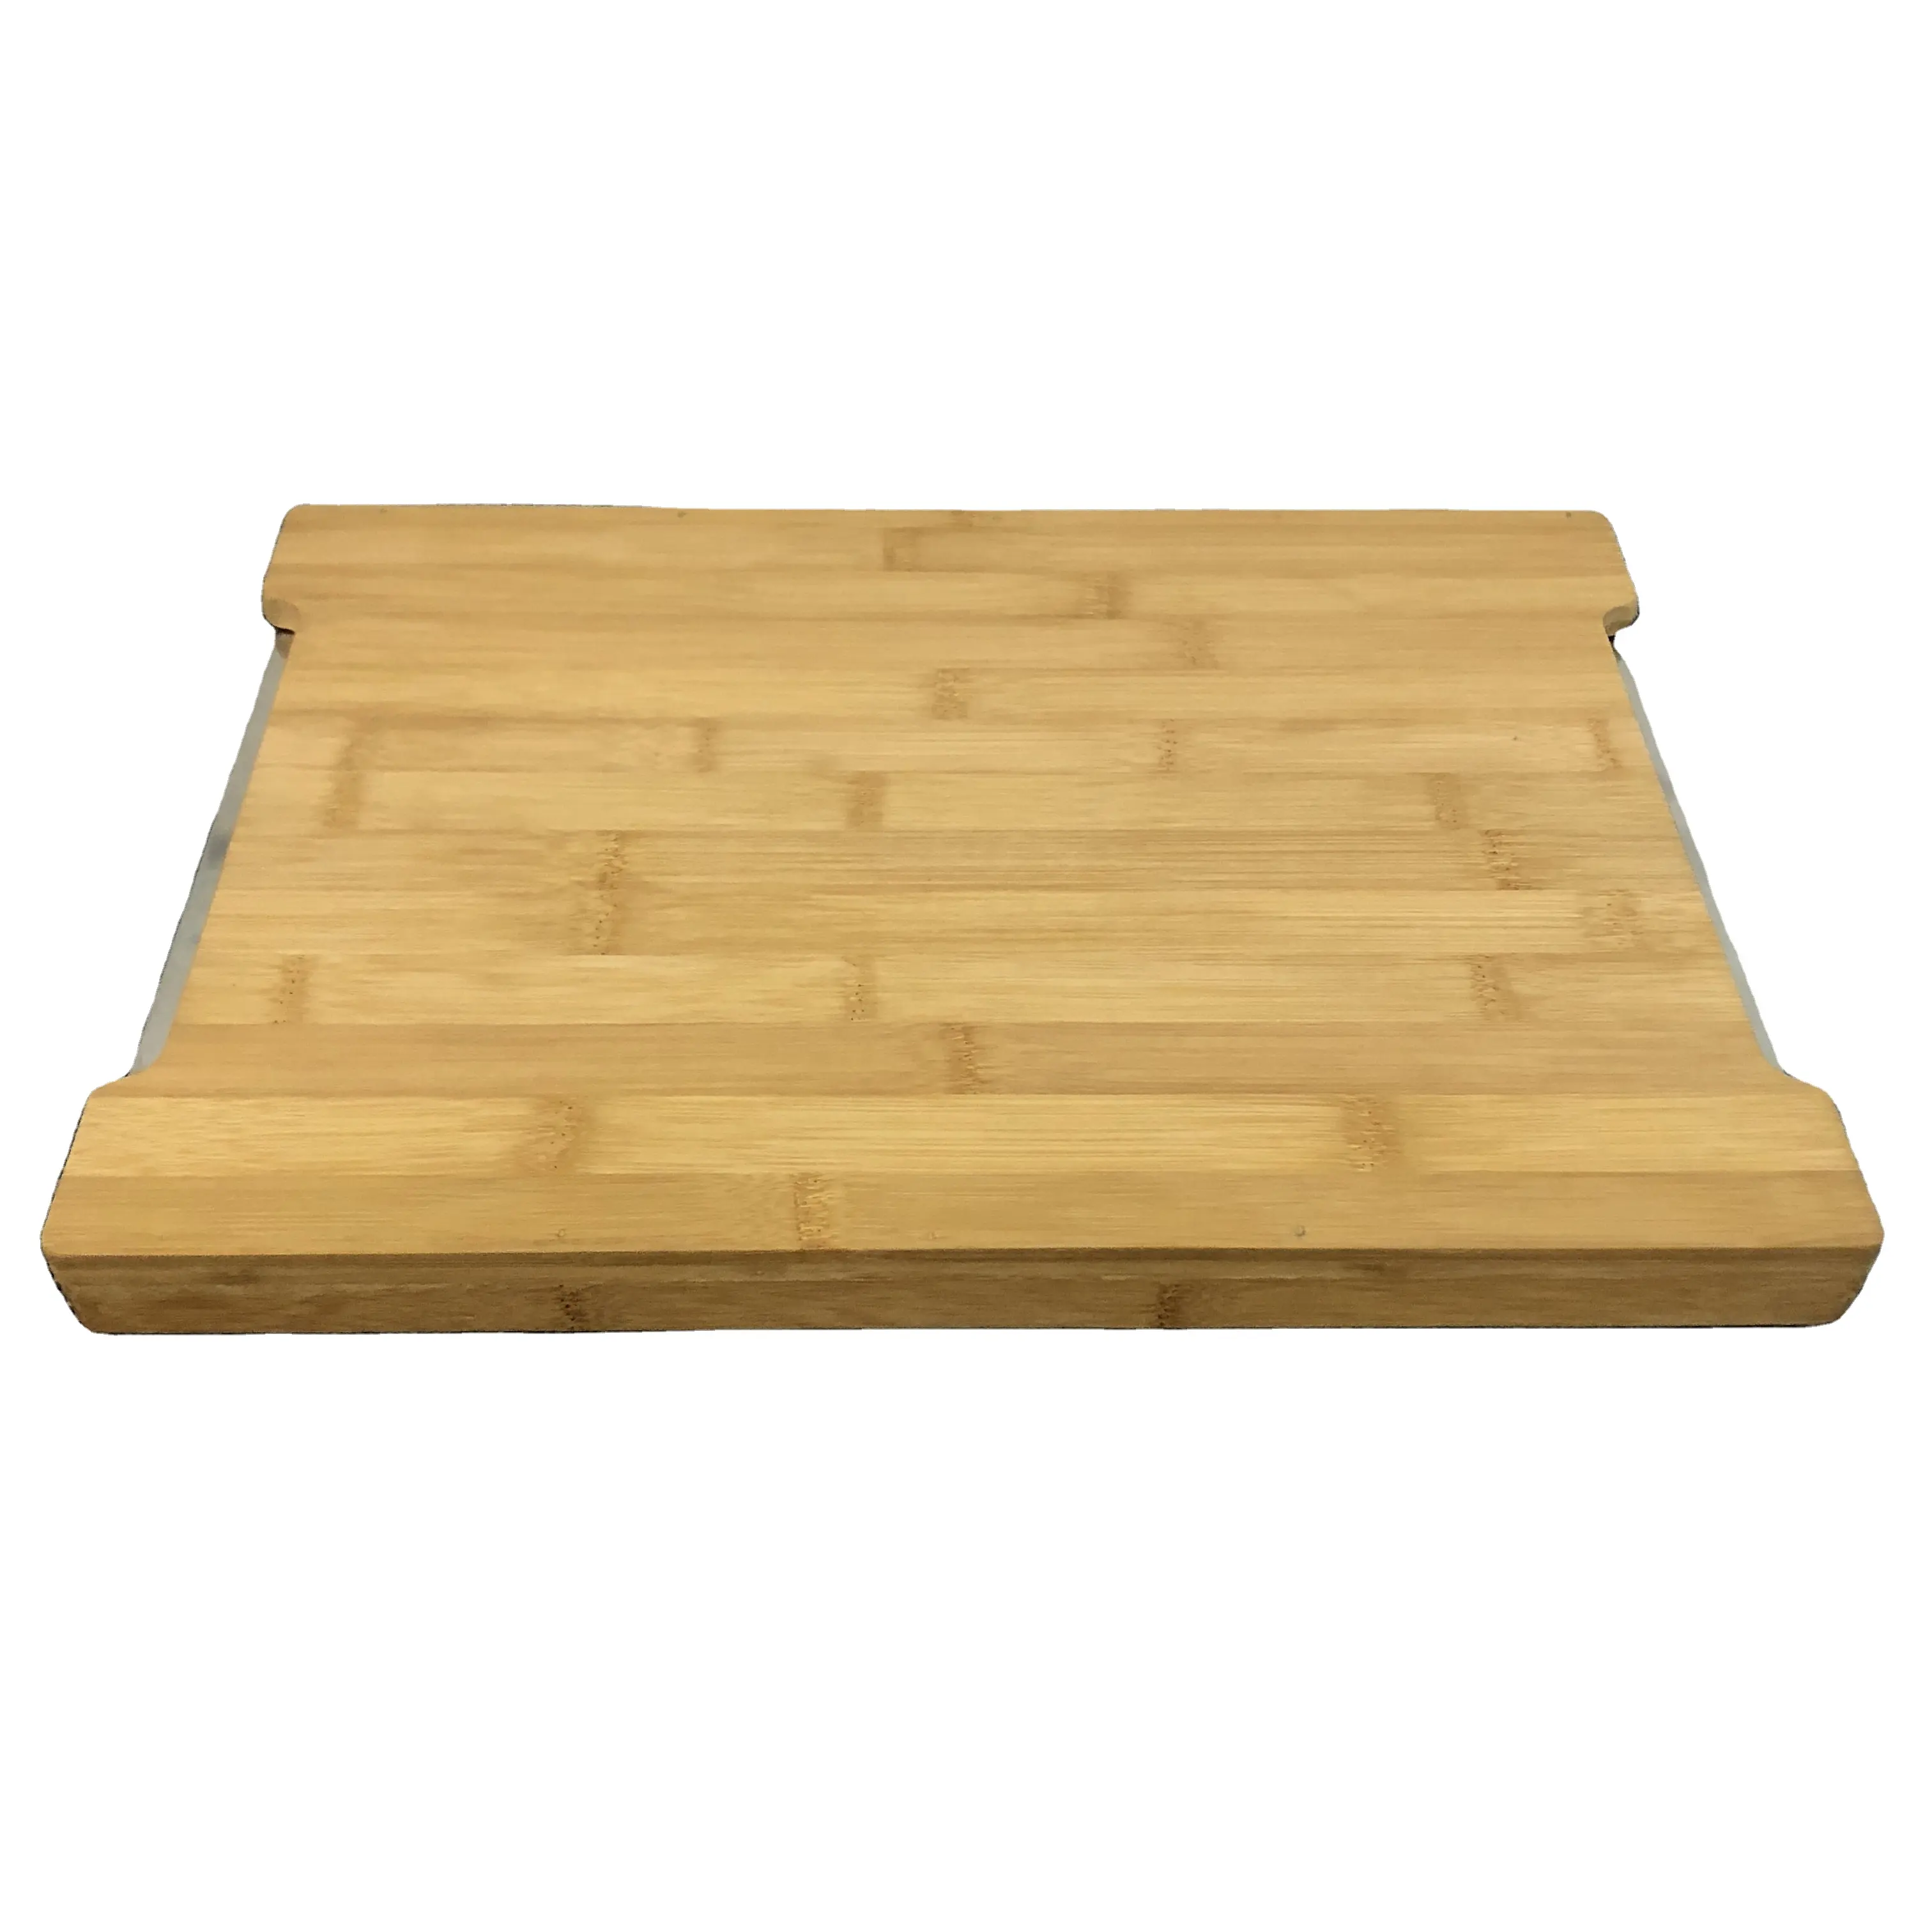 Planche à découper en bois de haute qualité, 2 tiroirs en acier inoxydable extensibles, planche à découper en bambou, livraison gratuite